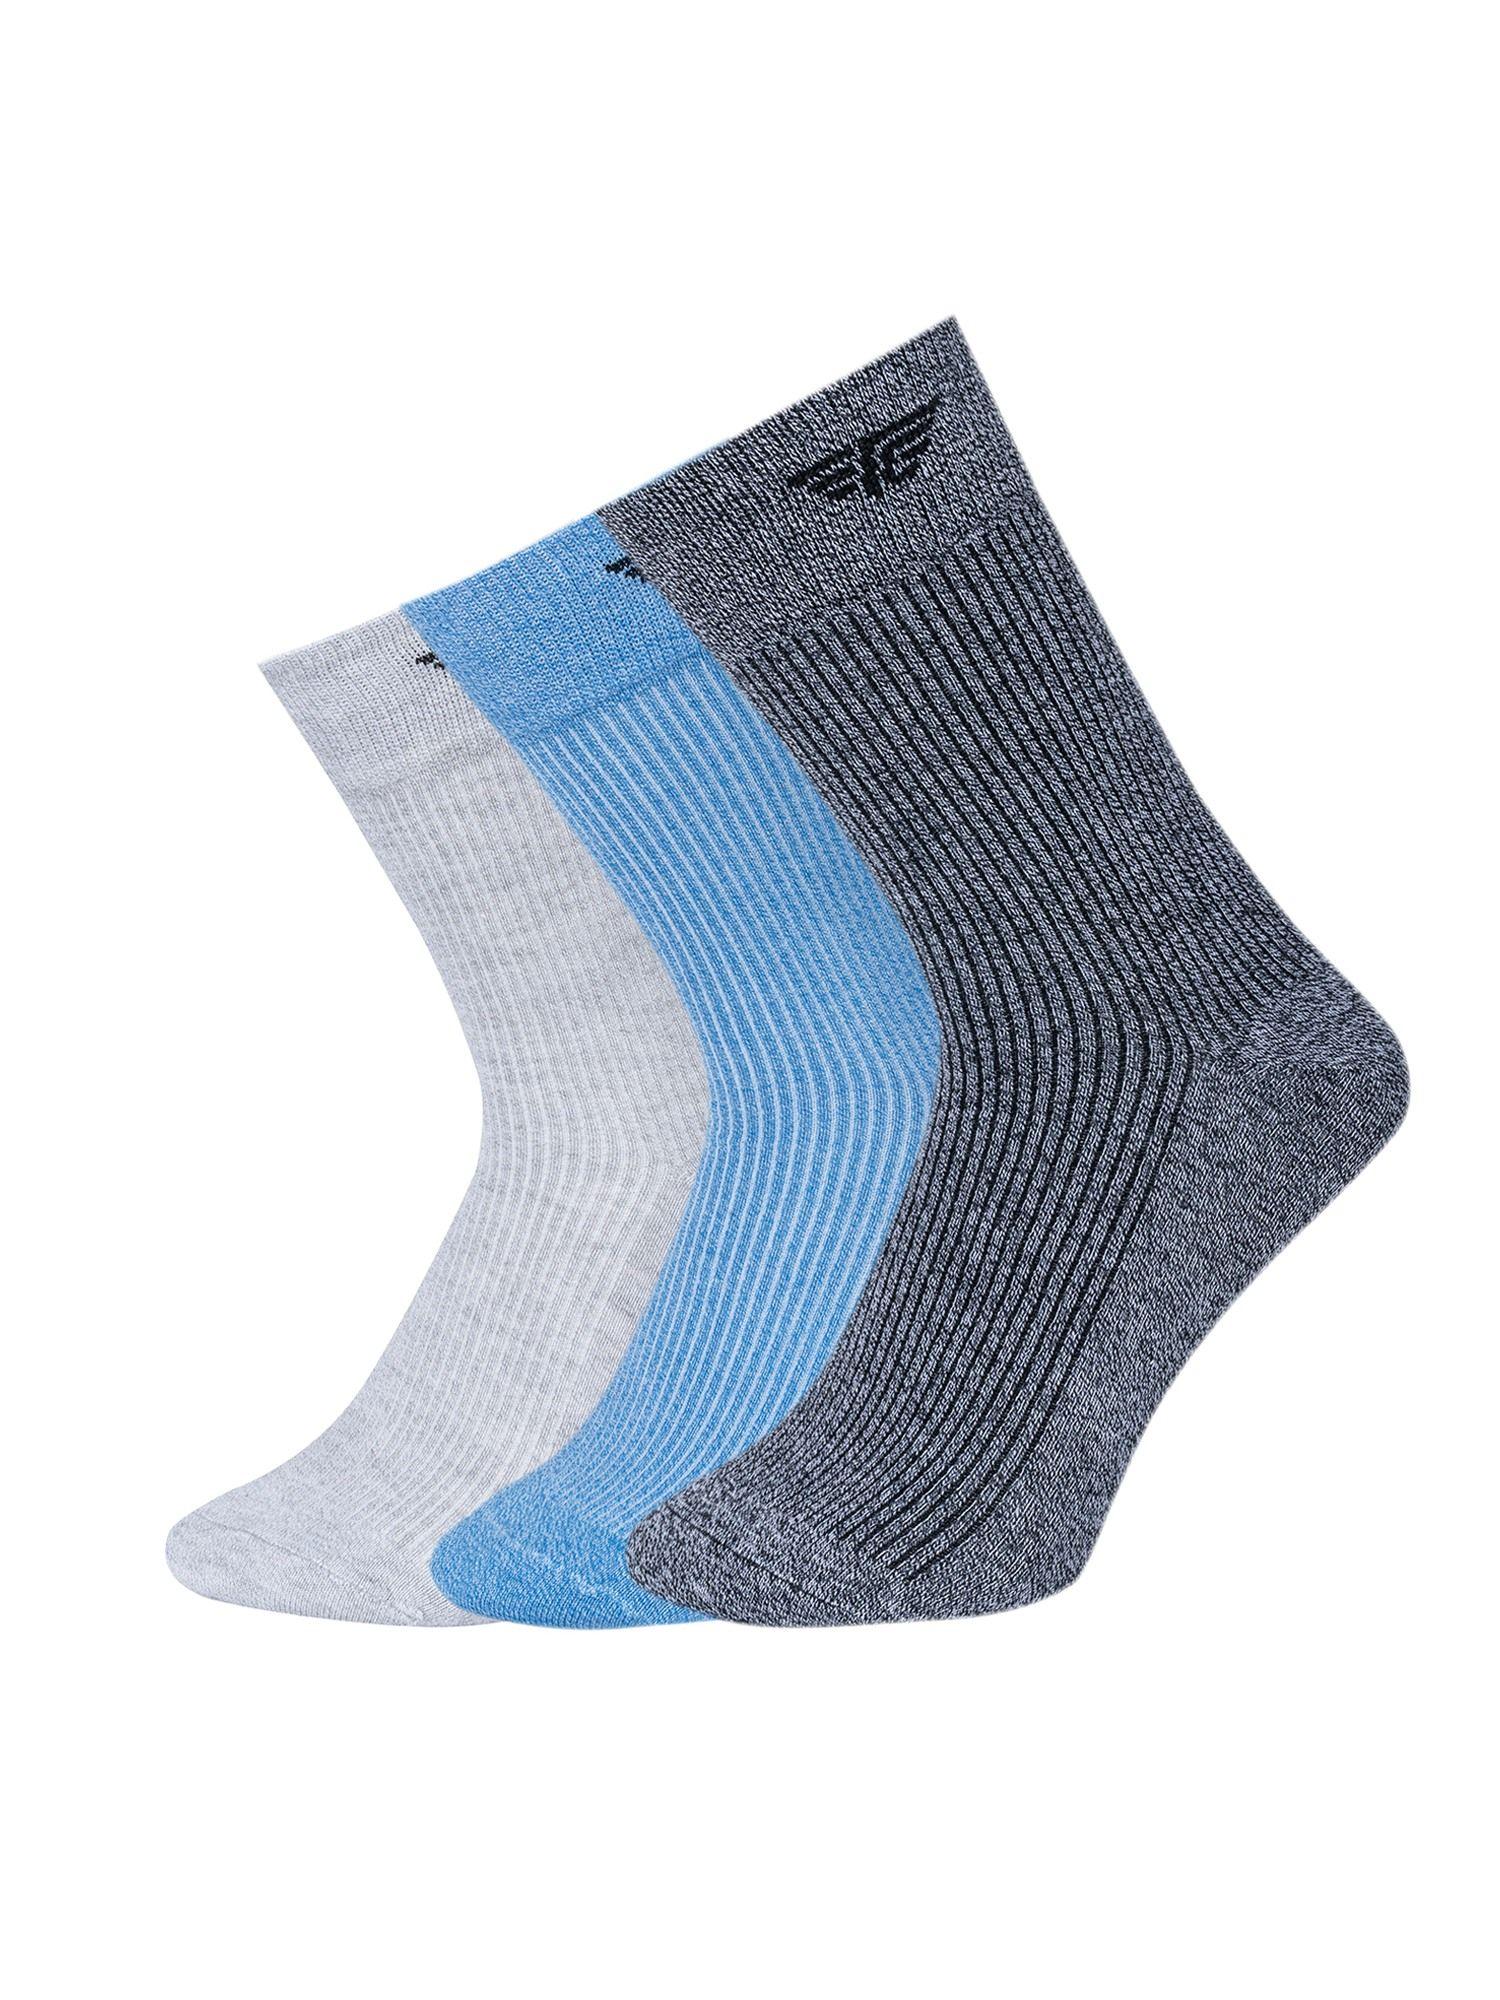 men multi-color melange above ankle socks (pack of 3)